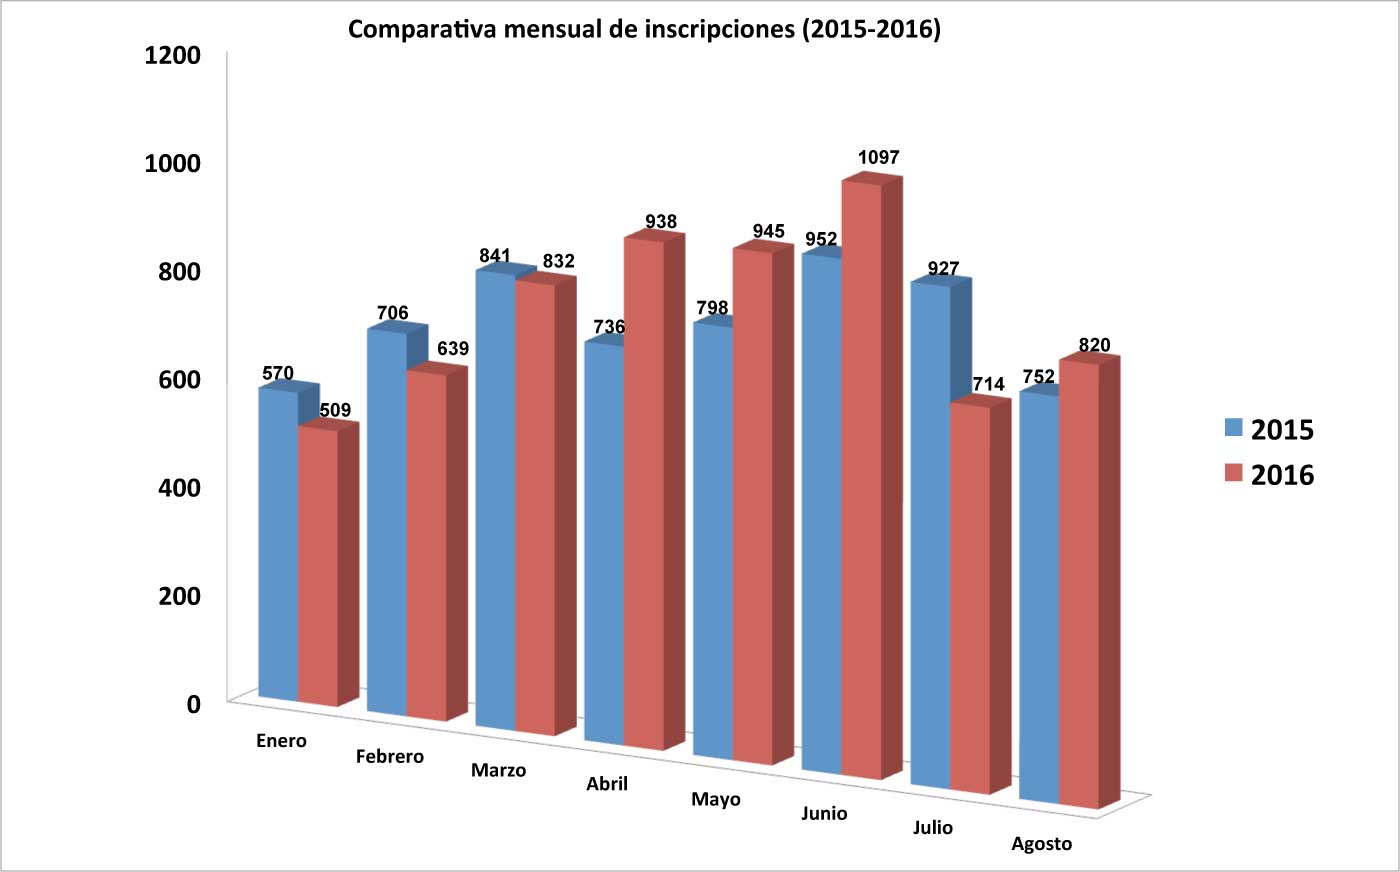 Comparativa mensual de inscripiciones ente los primeros ocho meses de 2015 y 2016